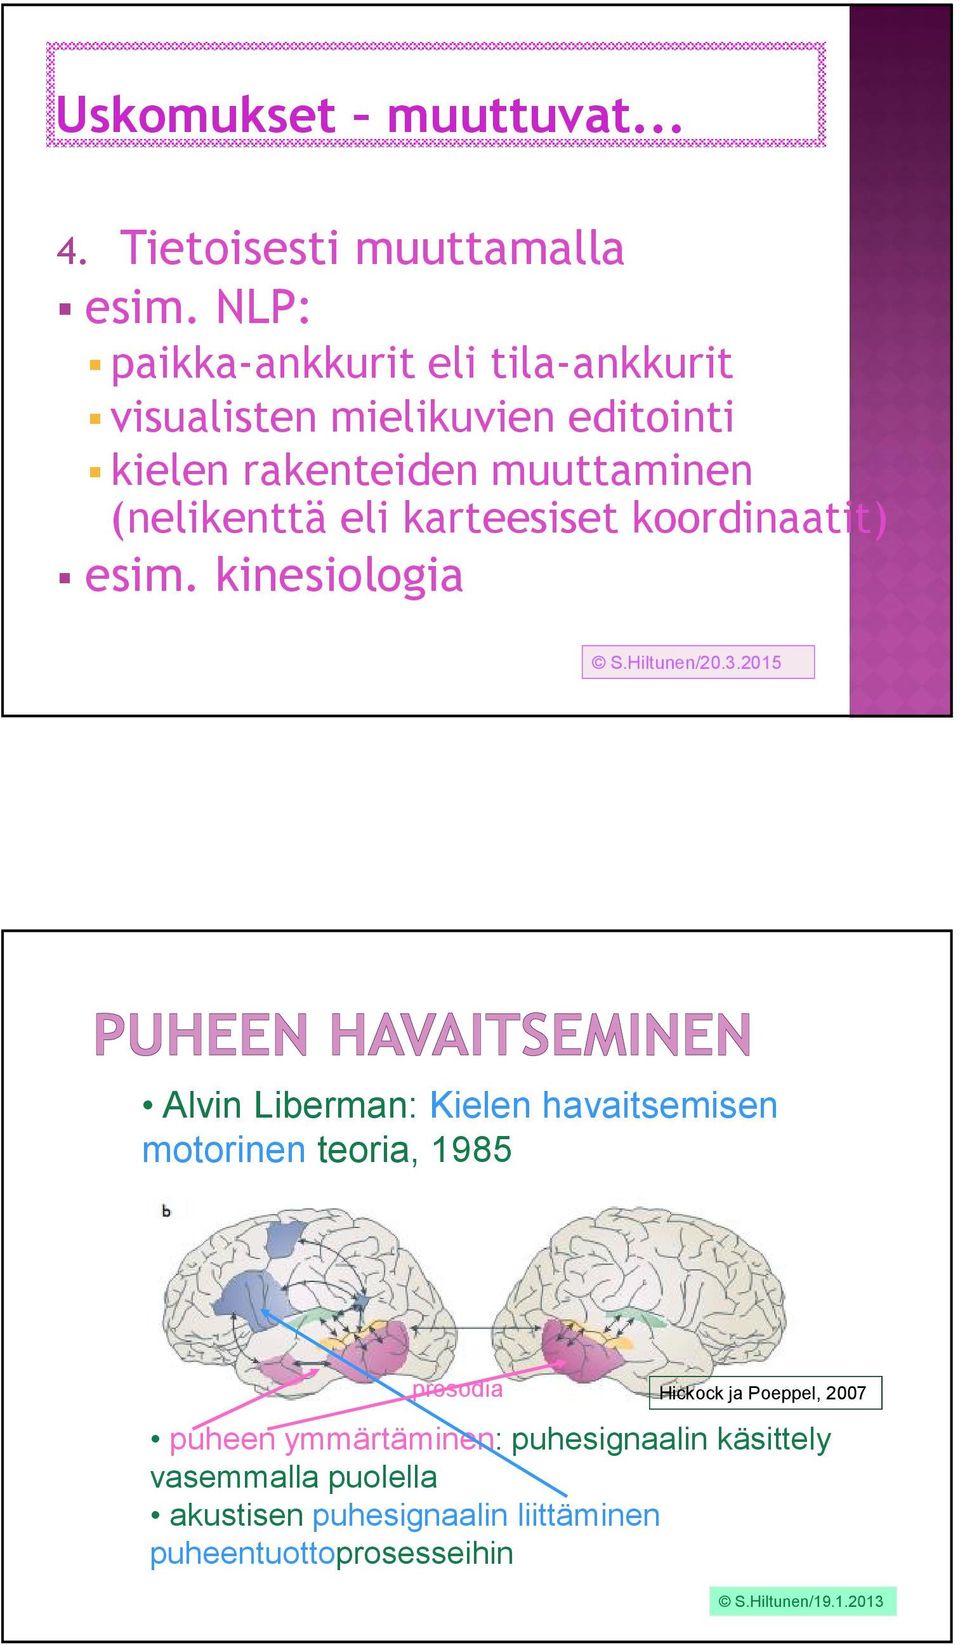 karteesiset koordinaatit) esim. kinesiologia S.Hiltunen/20.3.